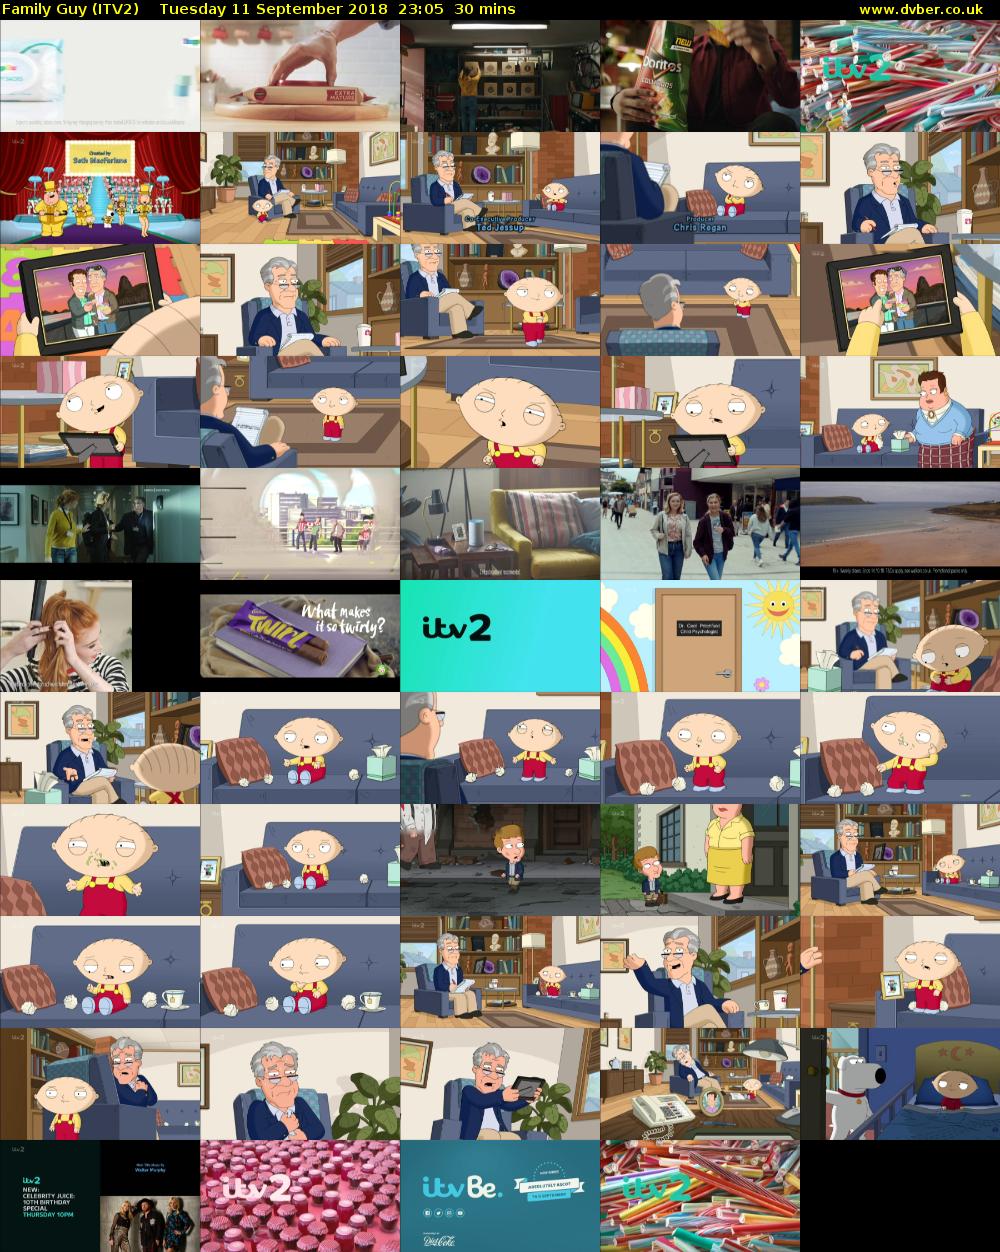 Family Guy (ITV2) Tuesday 11 September 2018 23:05 - 23:35